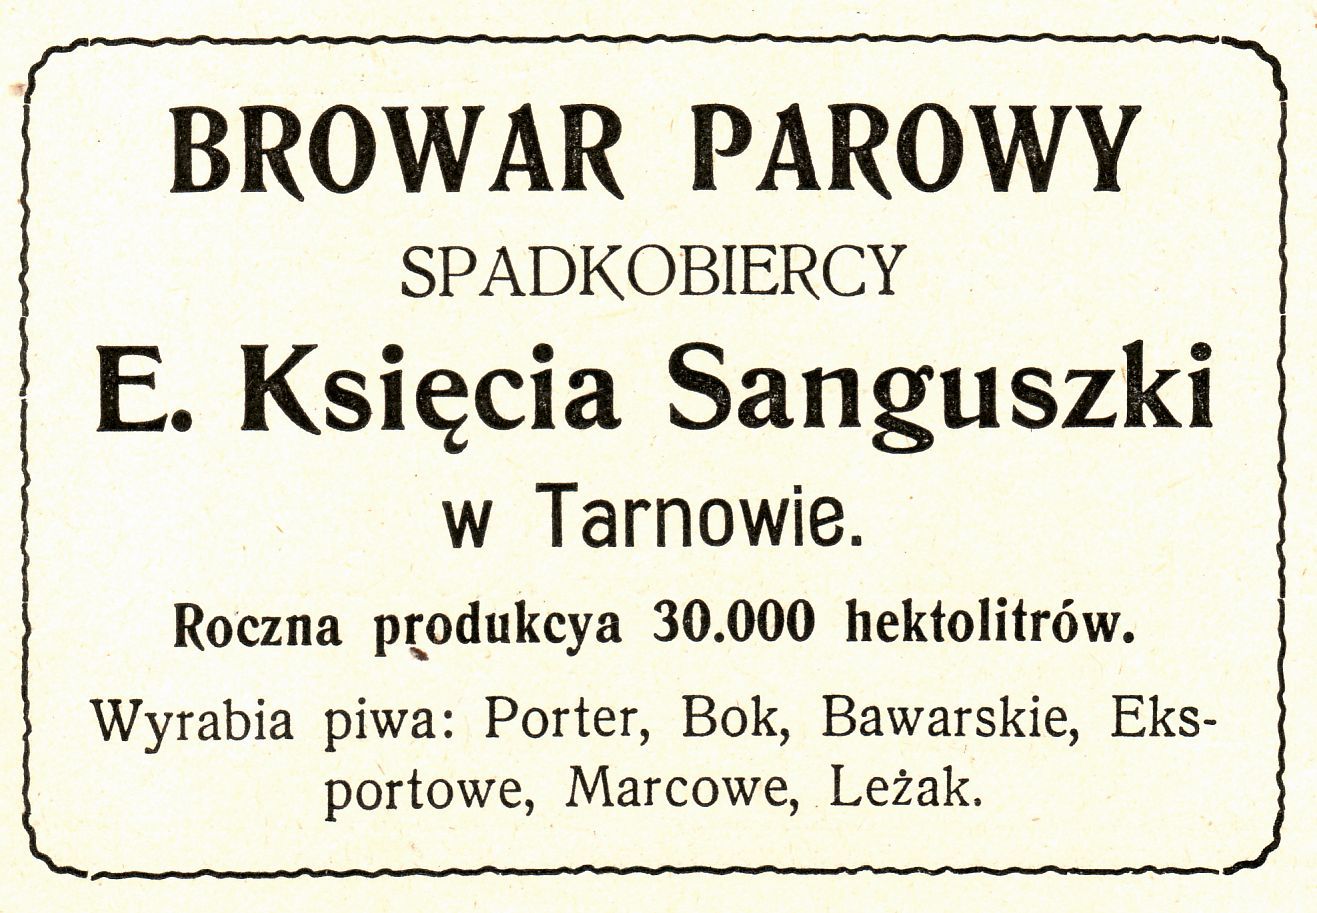 Reklama Browaru księcia Sanguszki